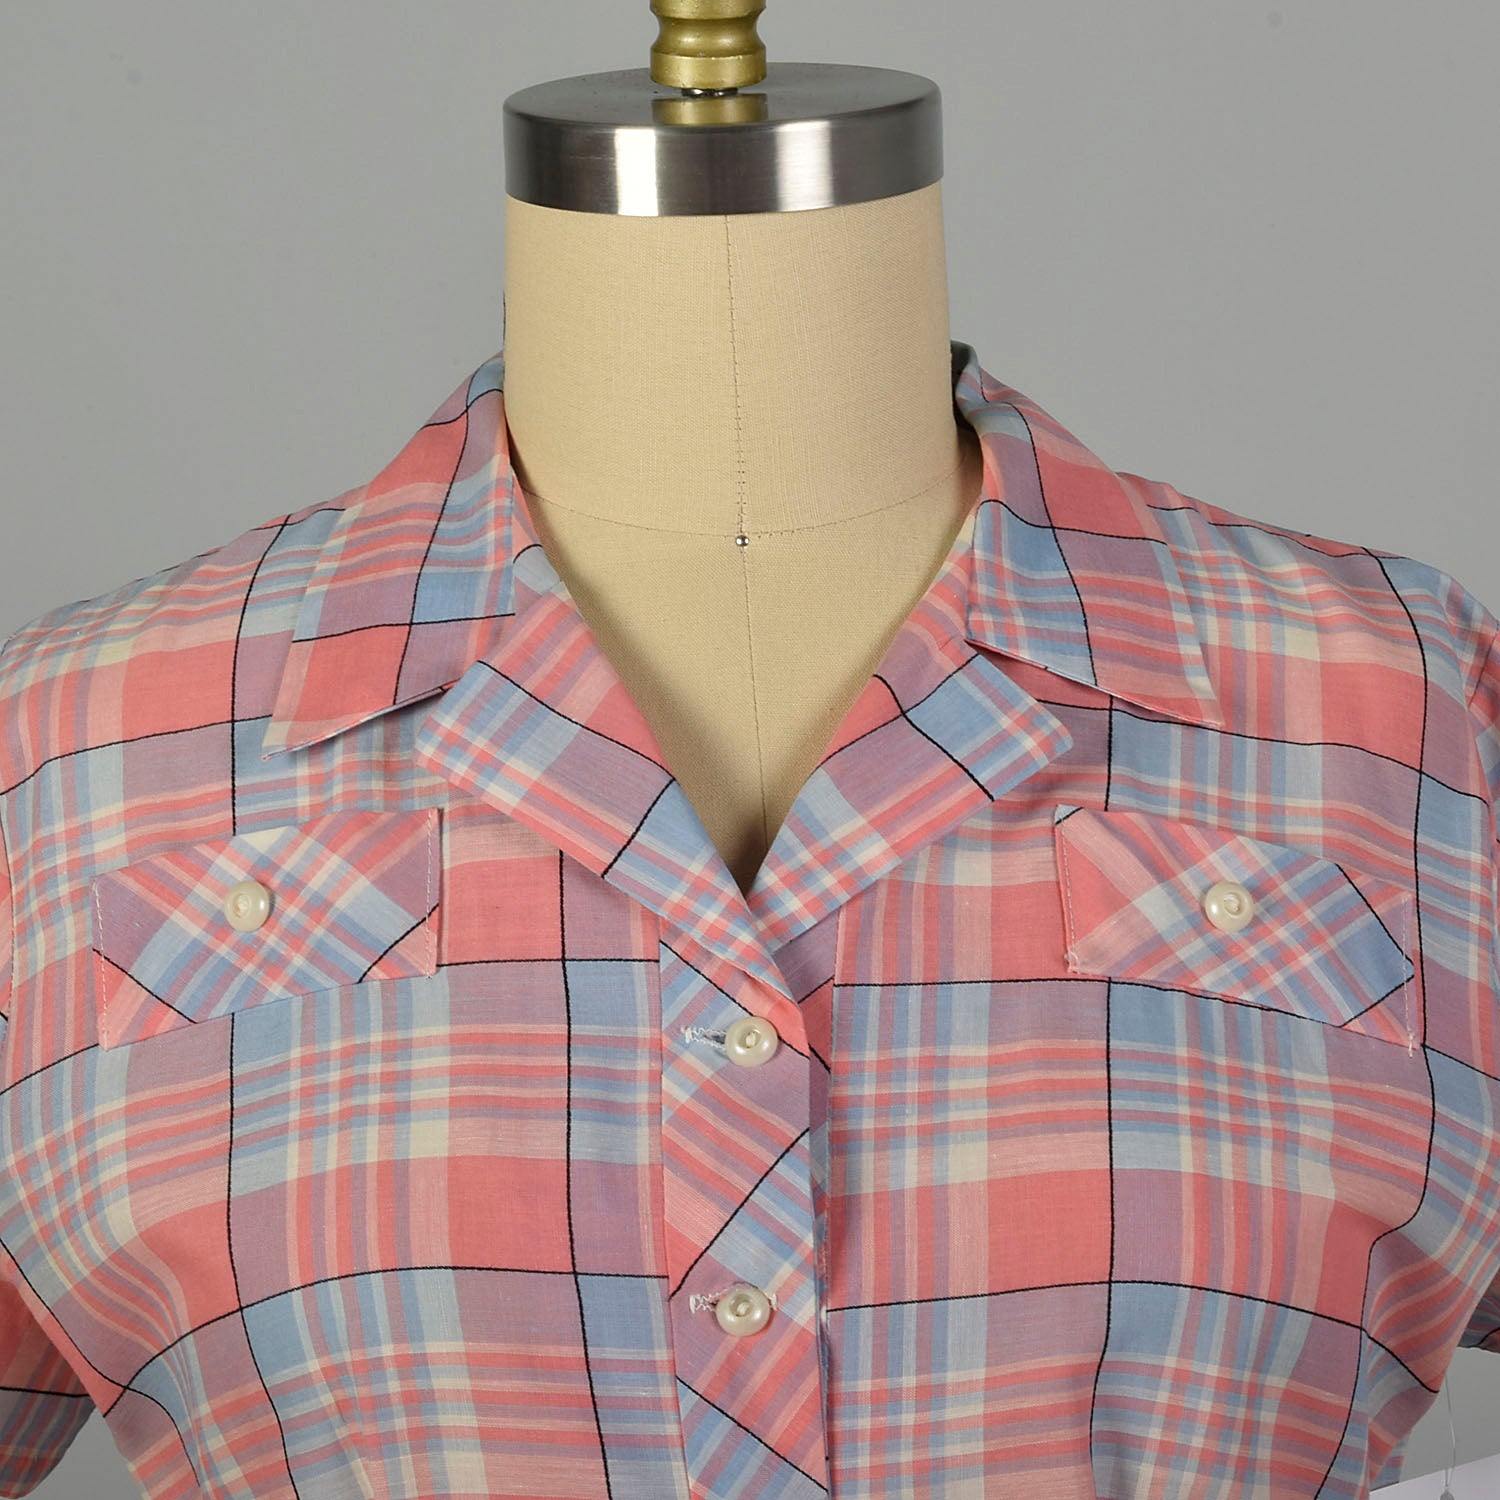 XL 1950s Pink Plaid Summer Day Shirtwaist Dress